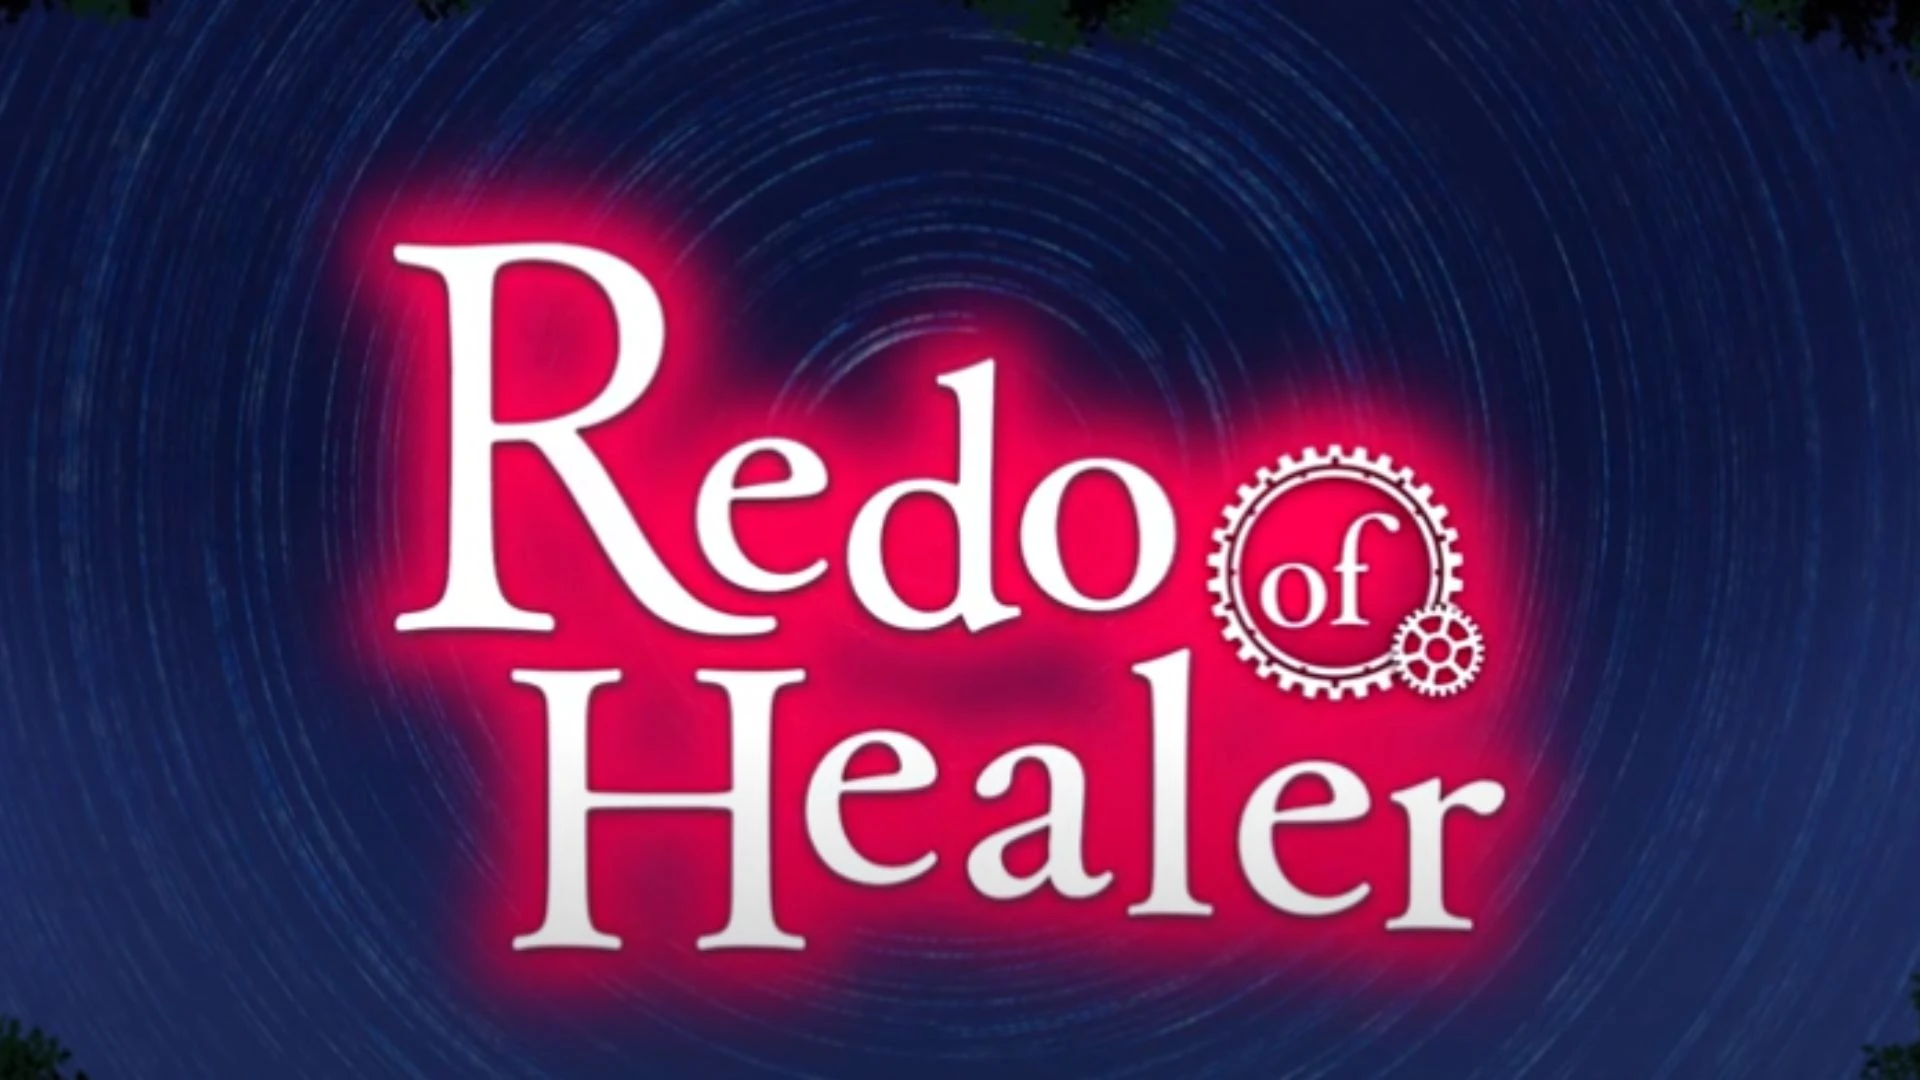 Redo of Healer (TV Series 2021) - News - IMDb